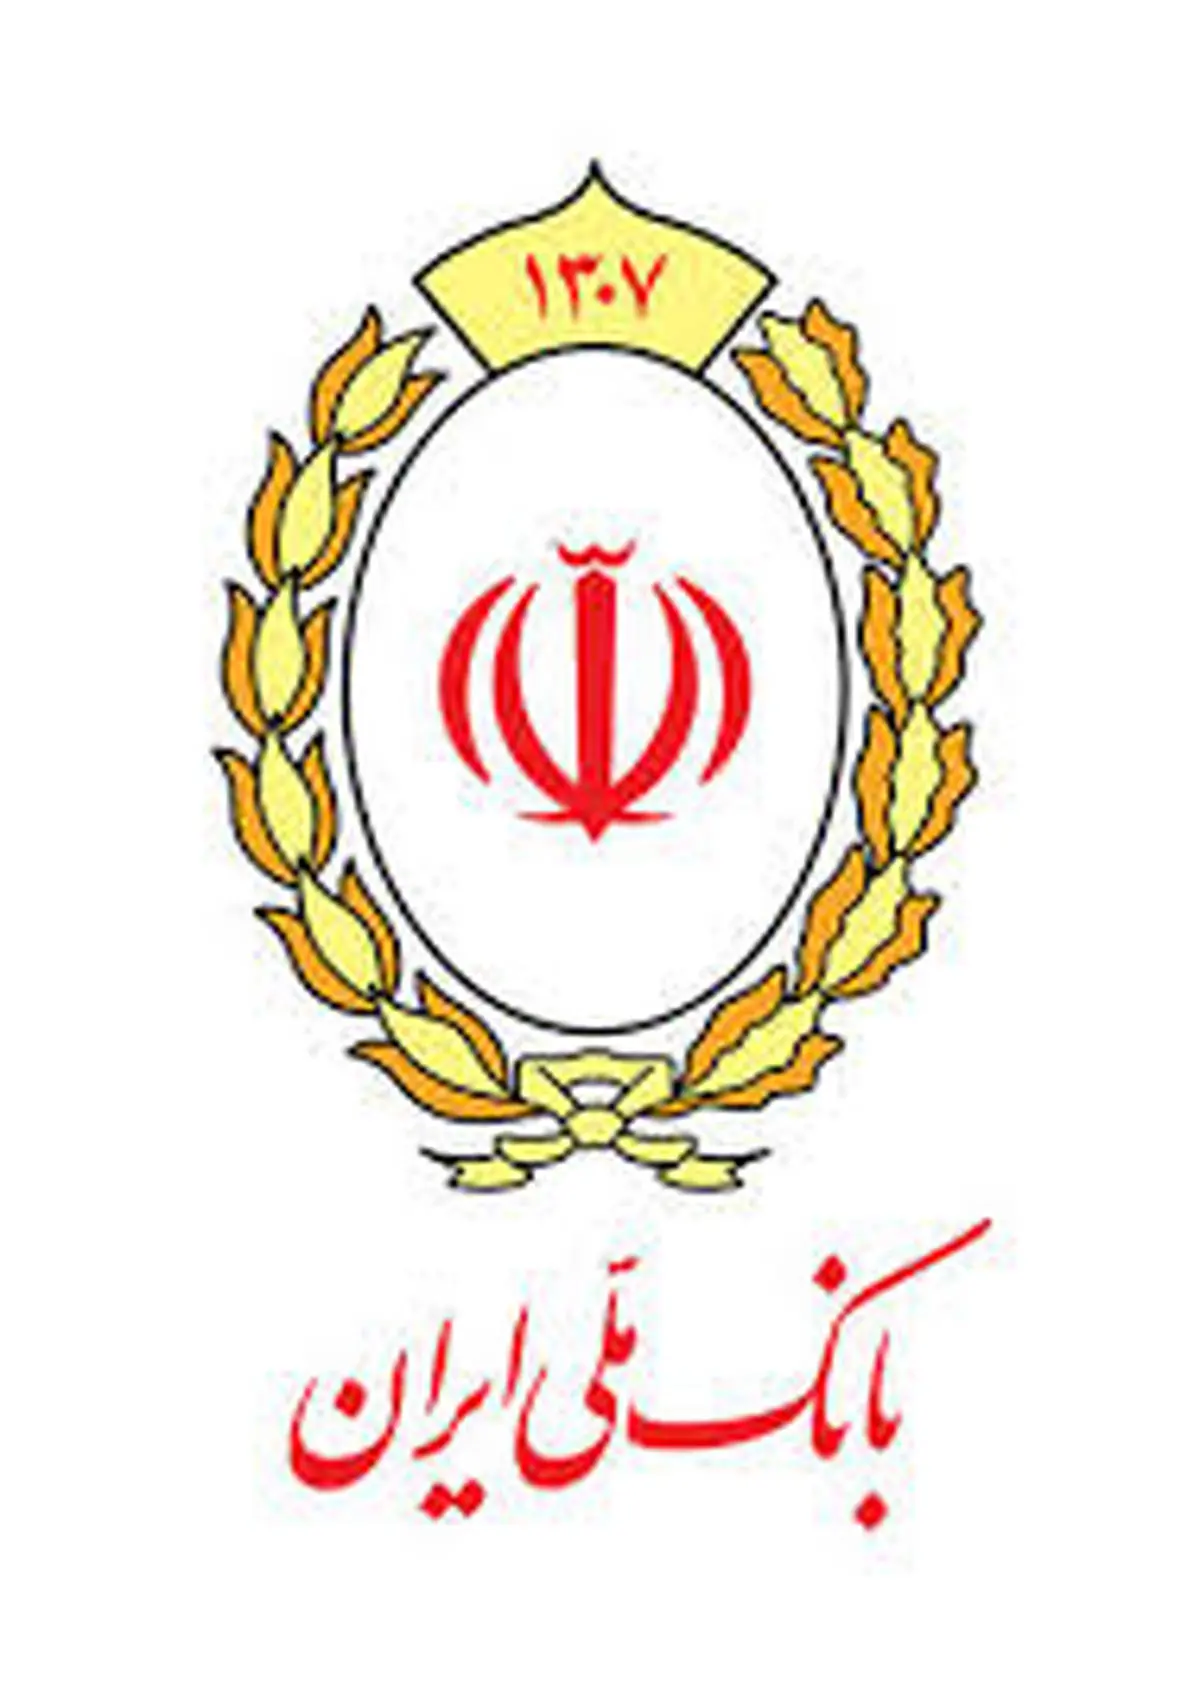 نمره «خیلی خوب» معاون وزیر اقتصاد به NPL بانک ملی ایران

